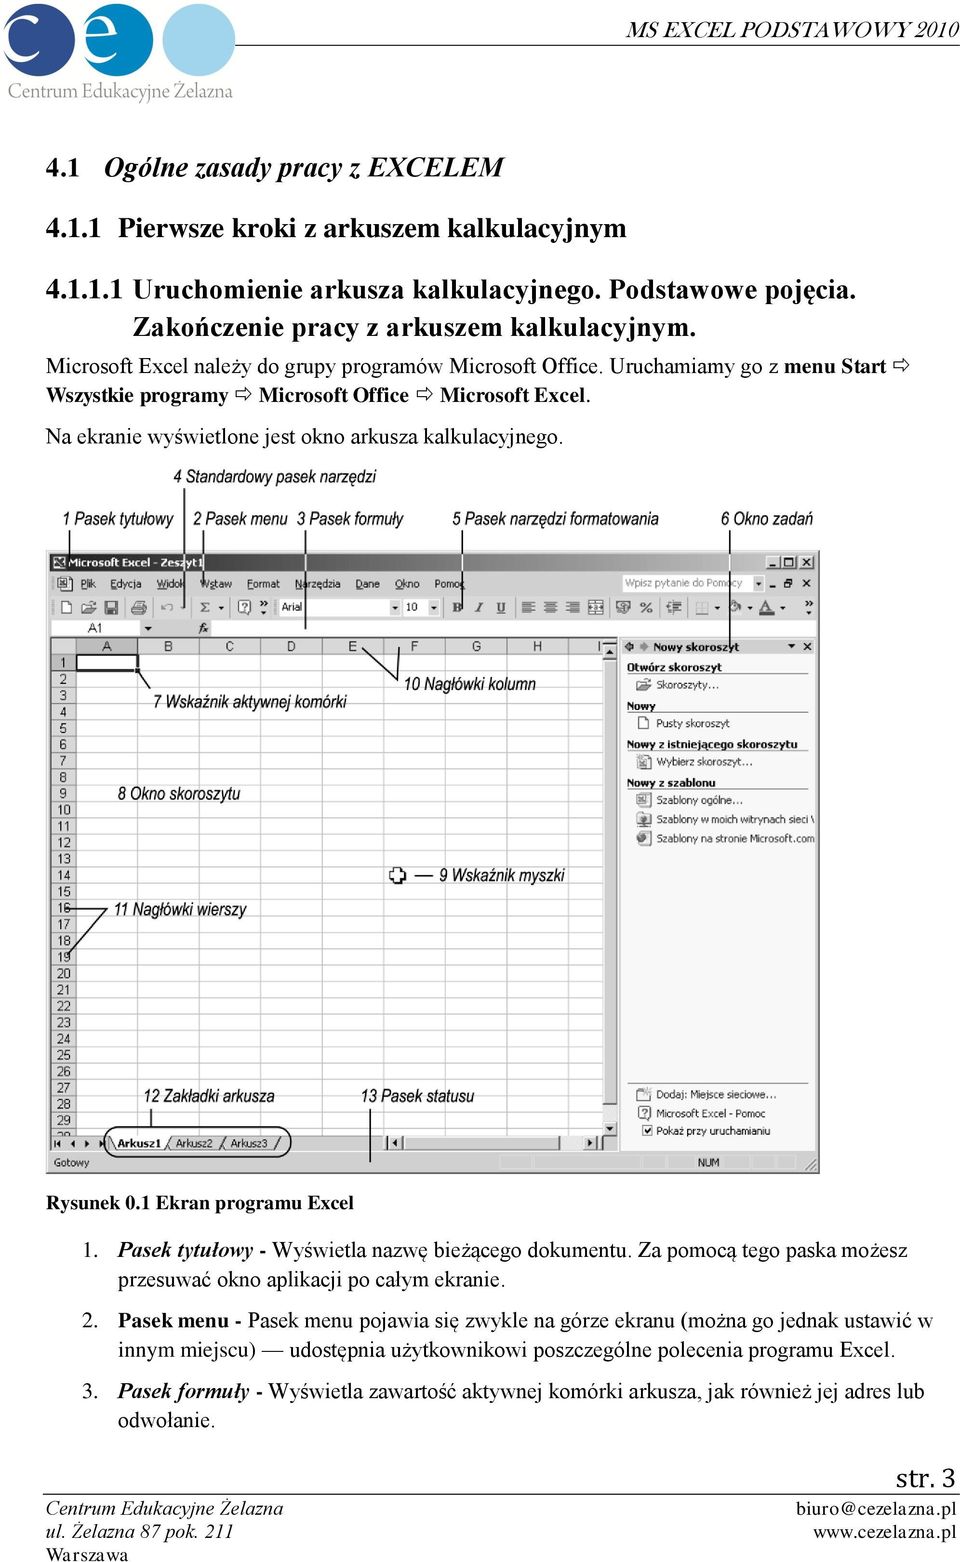 Rysunek 0.1 Ekran programu Excel 1. Pasek tytułowy - Wyświetla nazwę bieżącego dokumentu. Za pomocą tego paska możesz przesuwać okno aplikacji po całym ekranie. 2.